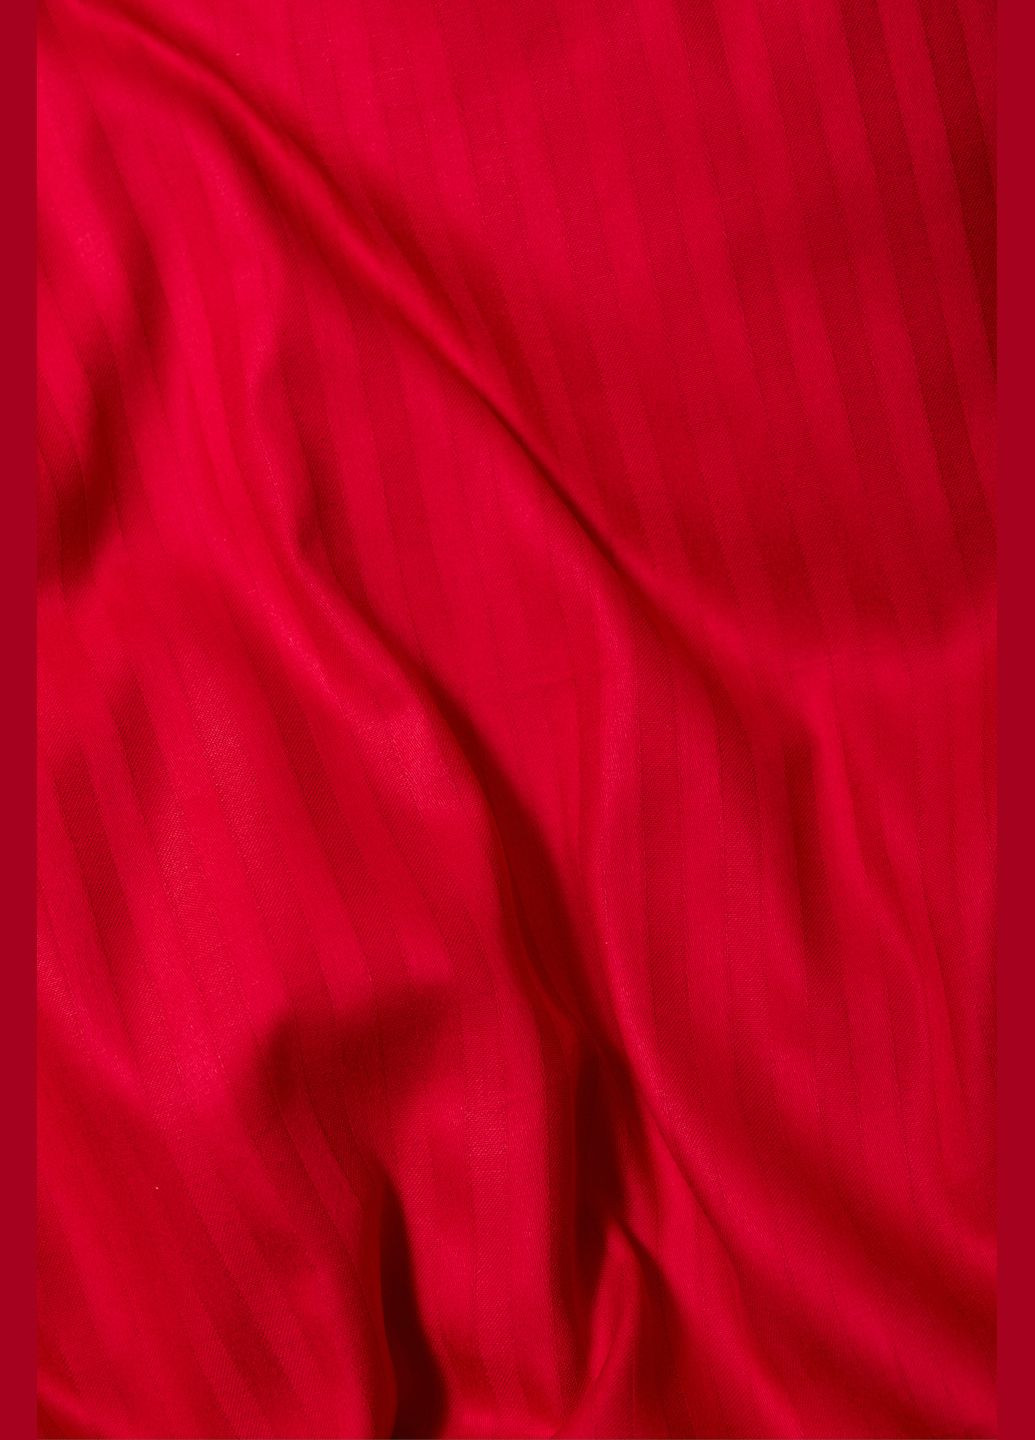 Комплект постельного белья Satin Stripe евро 200х220 наволочки 4х70х70 (MS-820003584) Moon&Star stripe red (288043790)